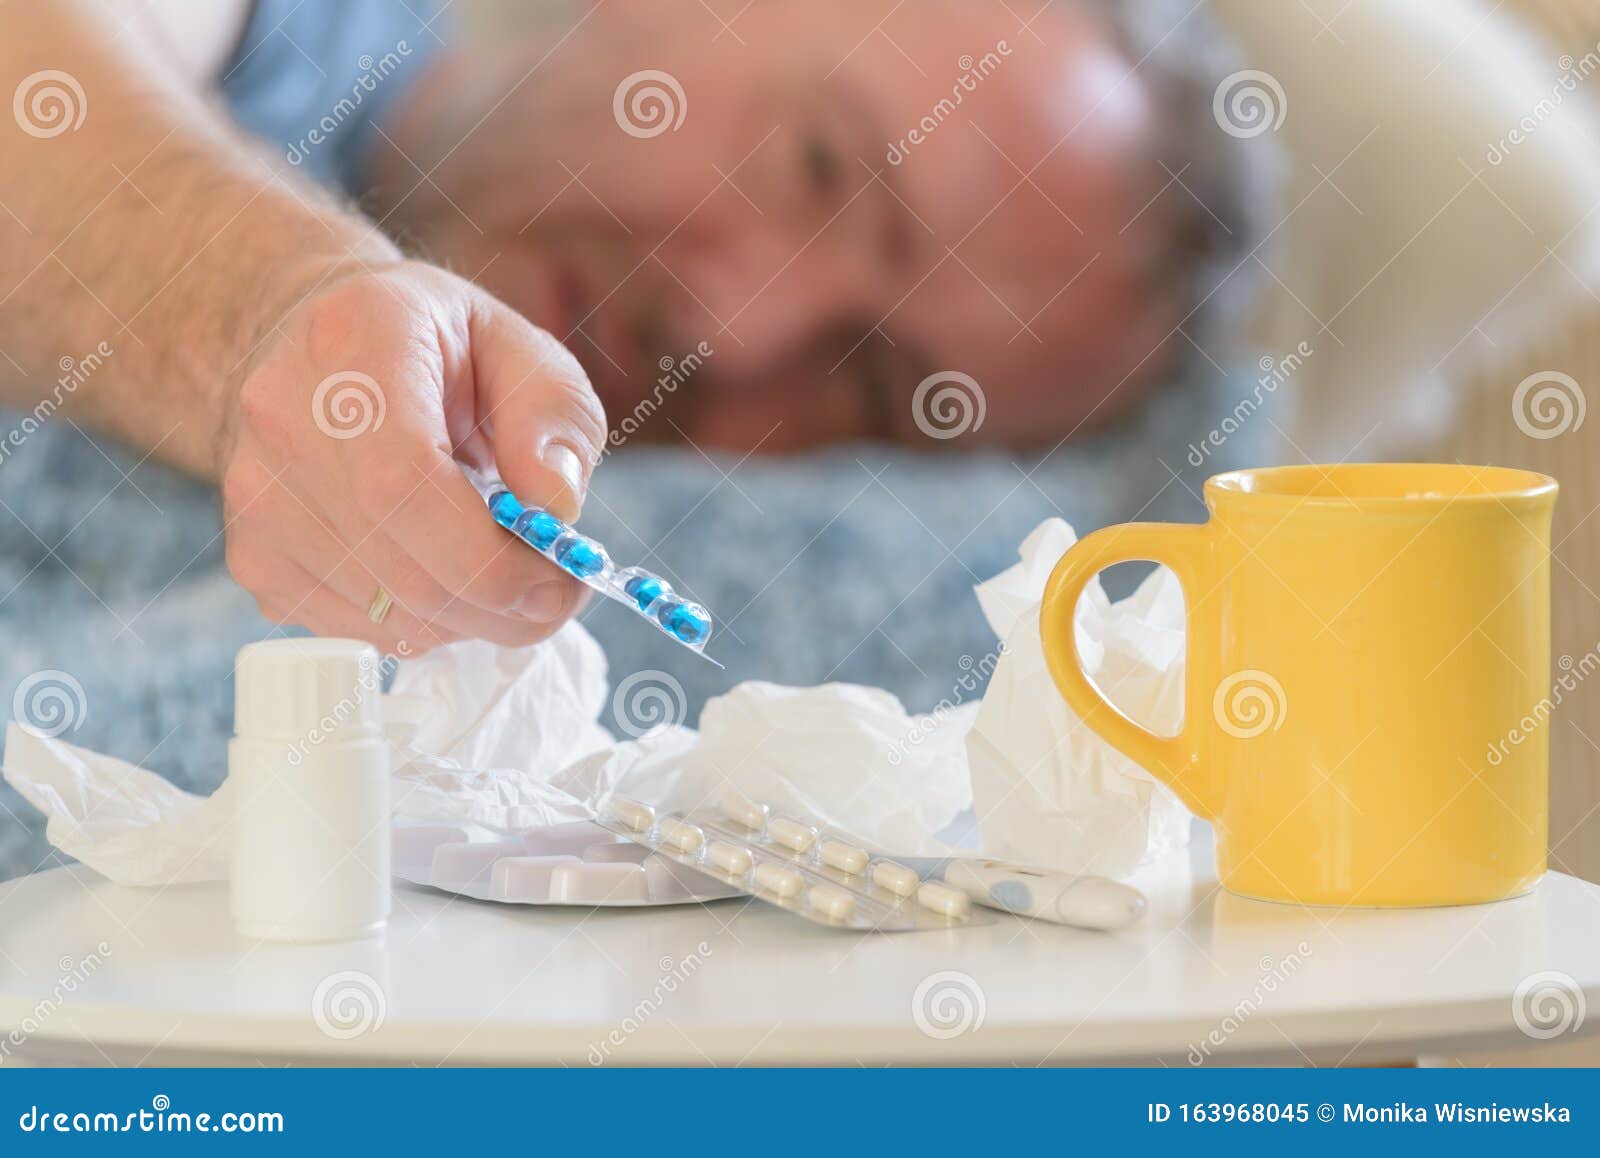 Hombre maduro que padece gripe o frío. Hombre que sufre de gripe o de frío está tristemente cubierto con una manta en su cama Medicamentos, medicamentos, vasos y tejidos en primer plano